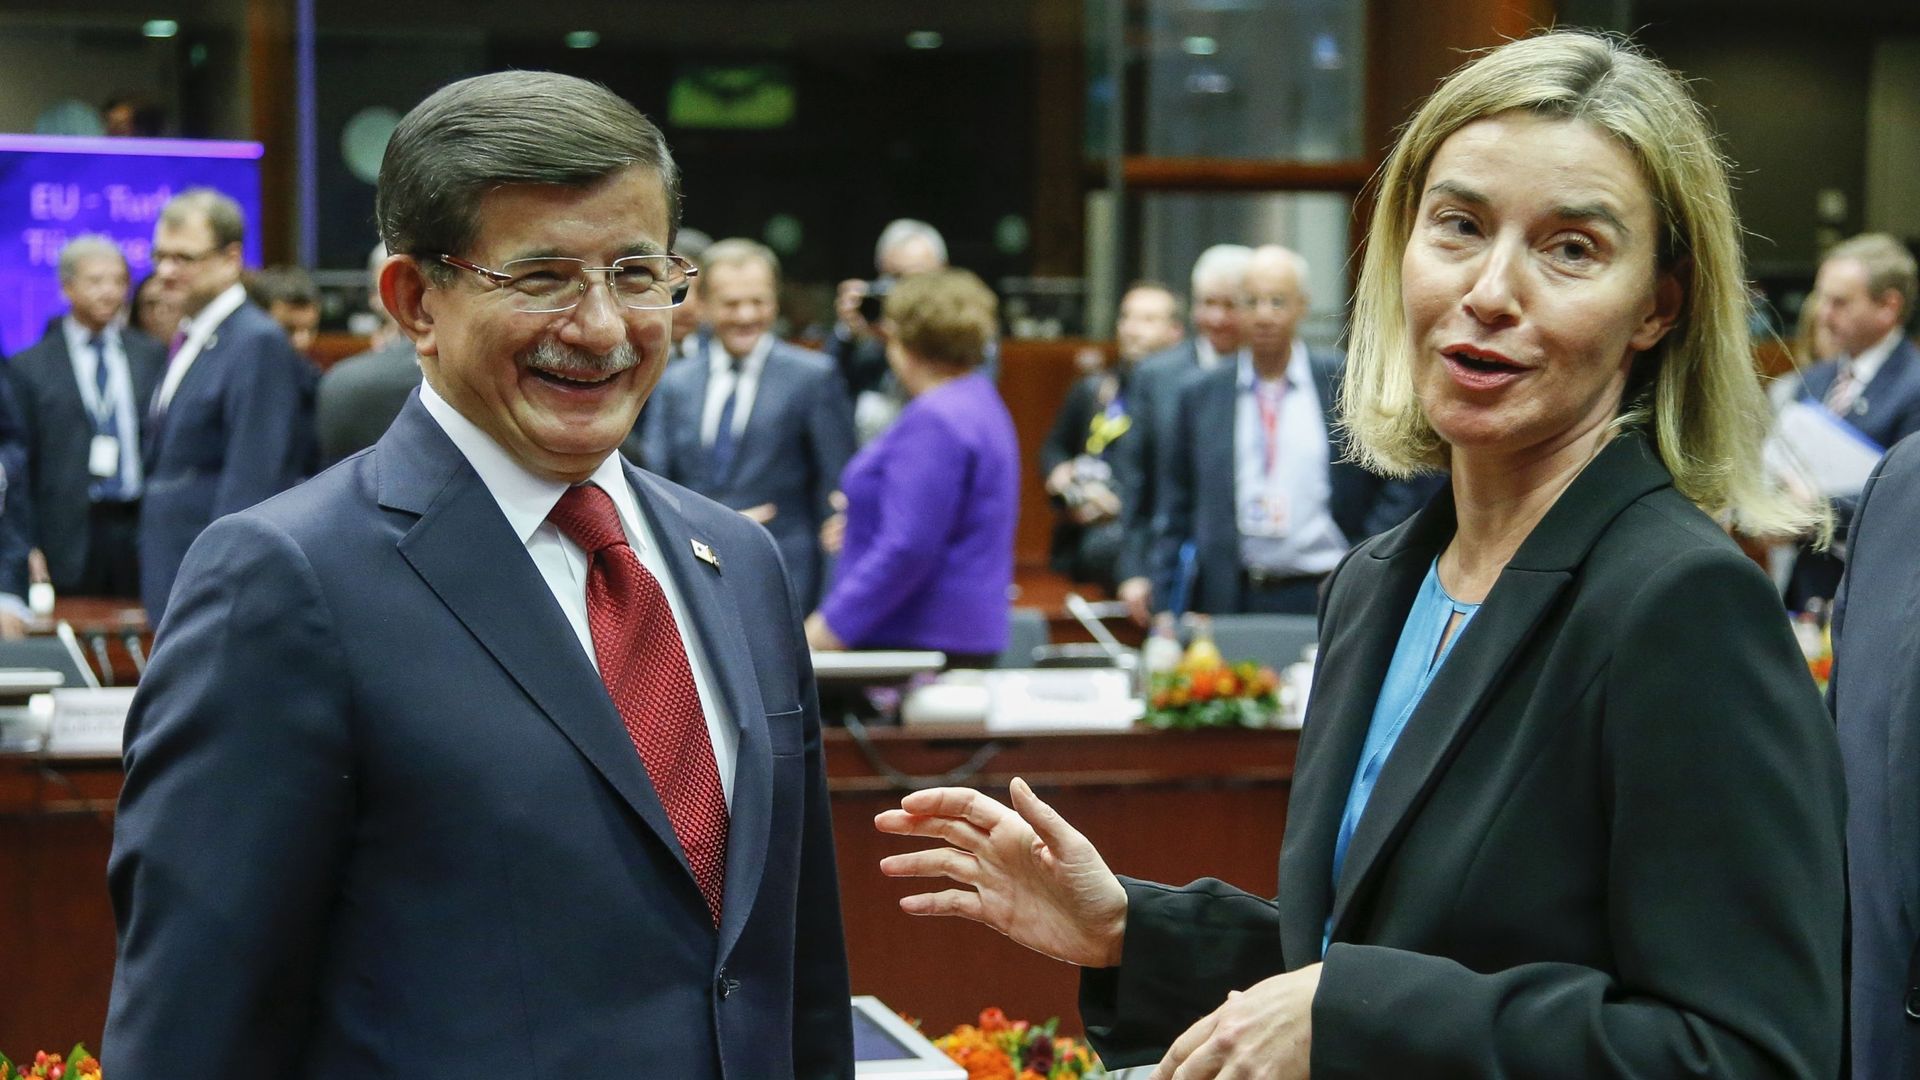 Crise des réfugiés: une future coopération entre la Turquie et l'Union européenne